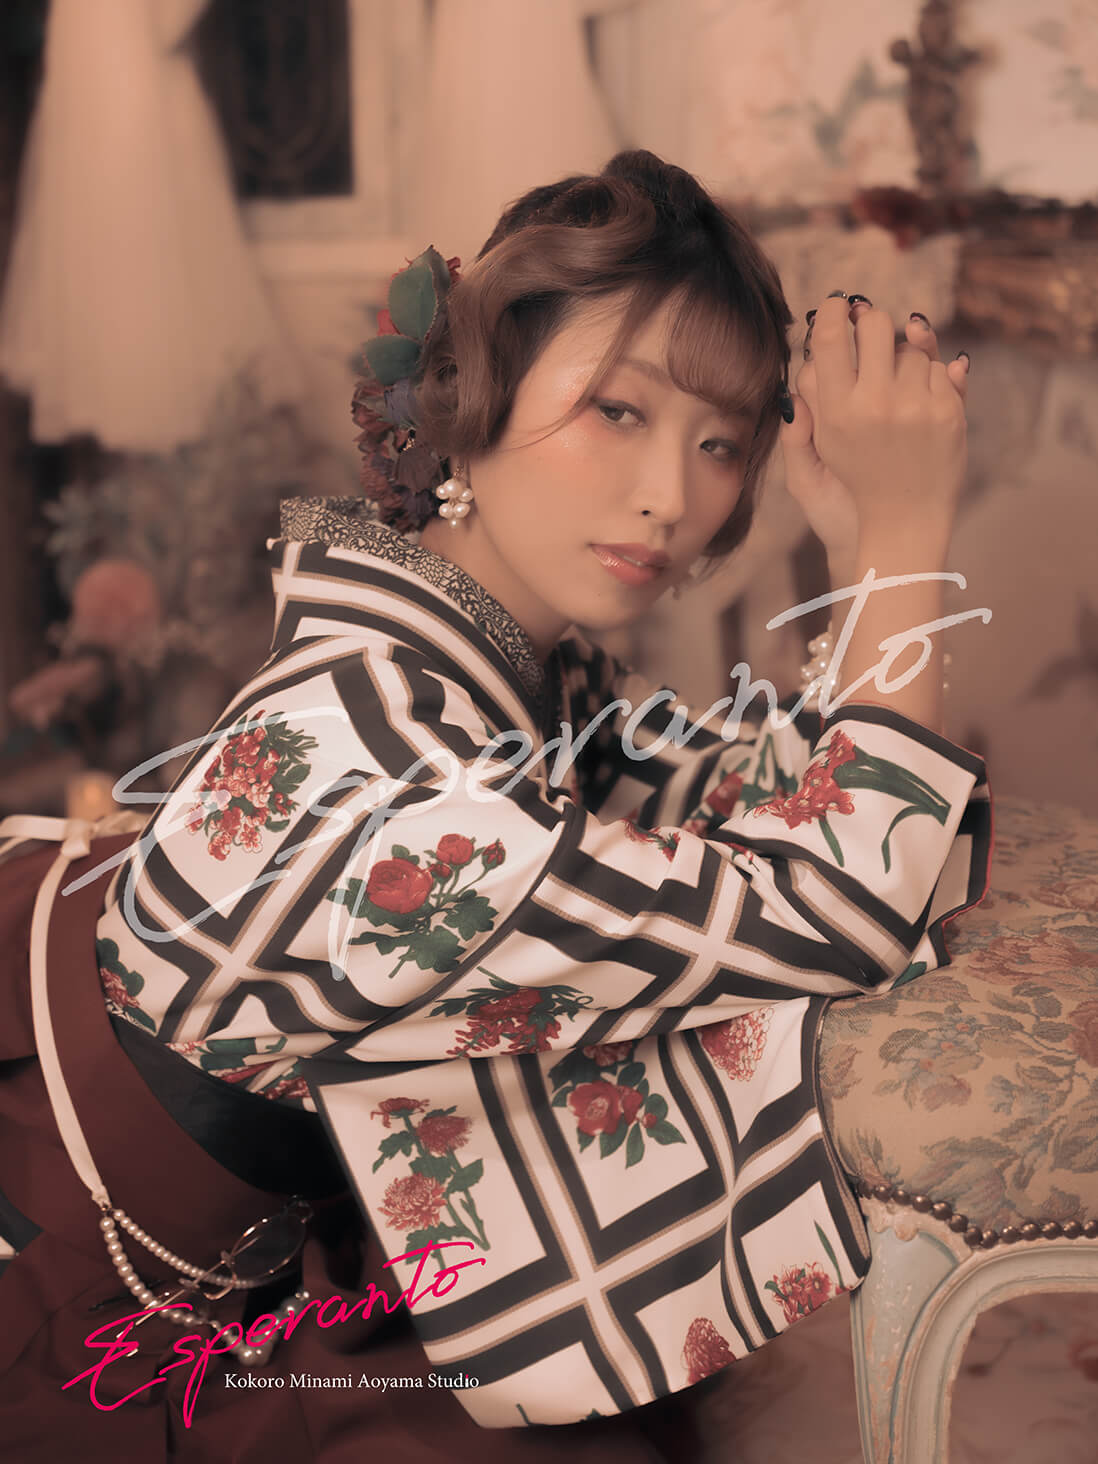 Kimono portrait photo